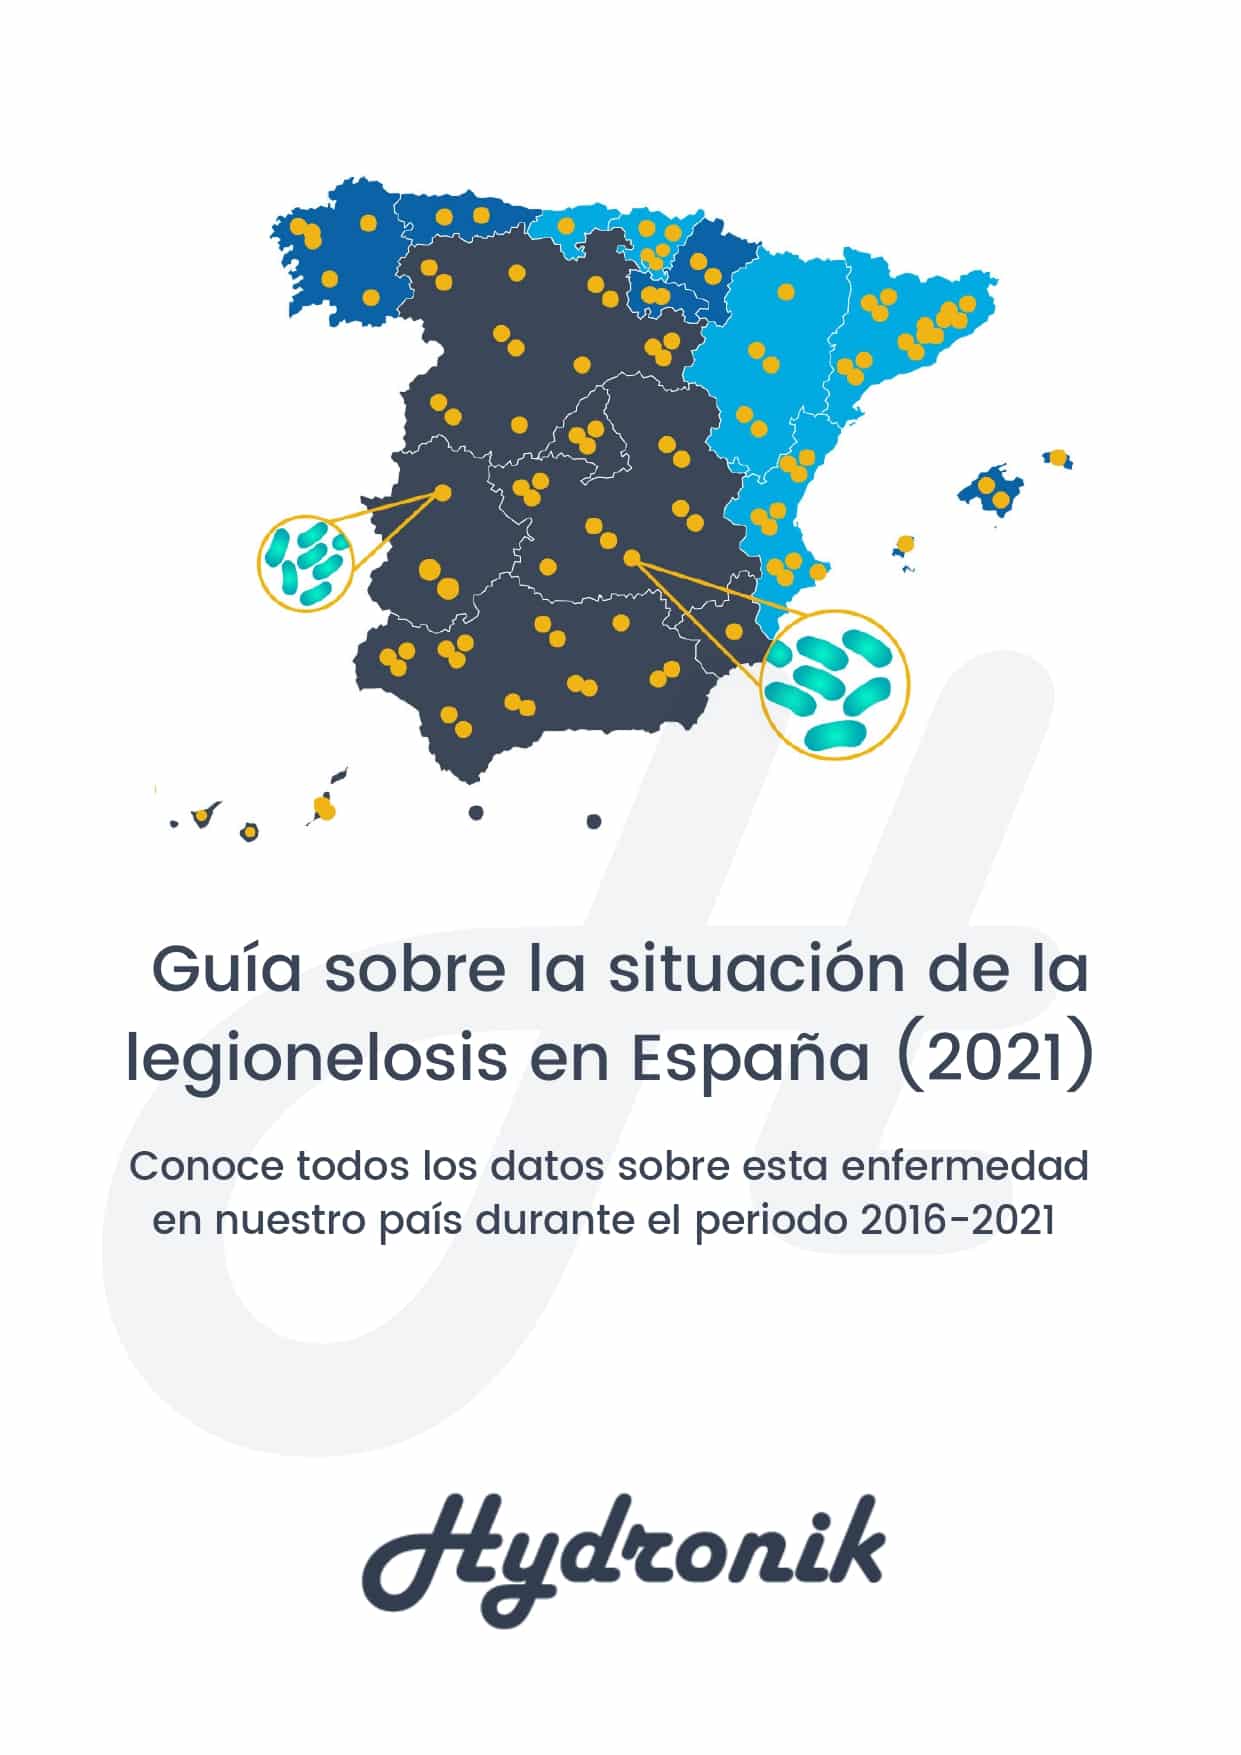 Guia sobre la situacion de la legionelosis en Espana 2021 page 0001